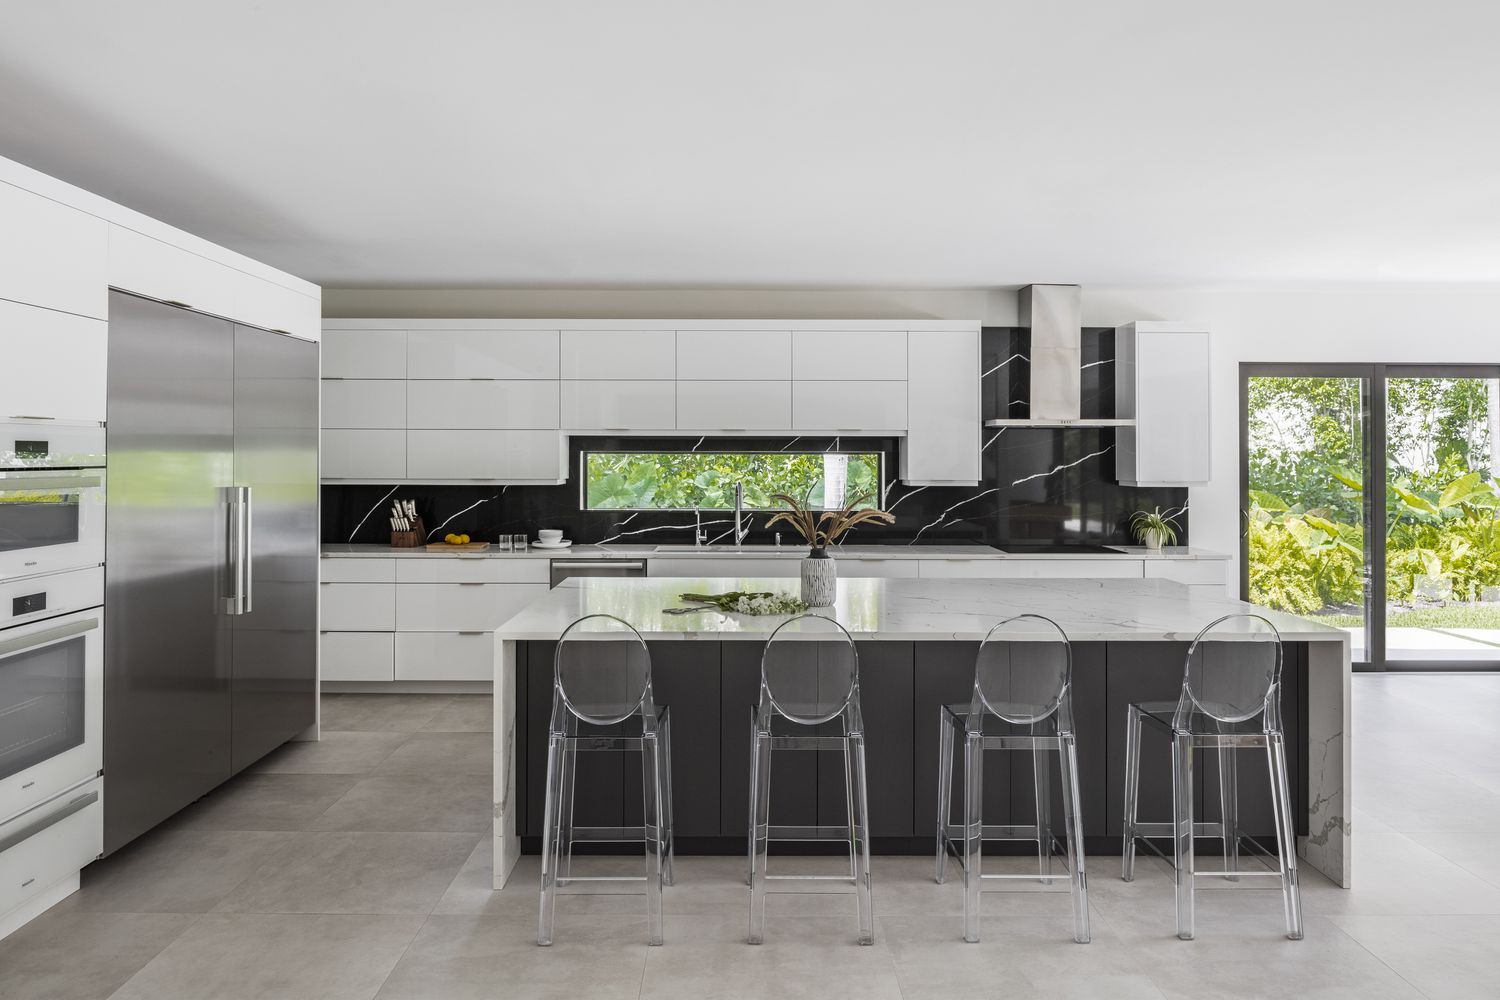 O piso cinza cobre uma cozinha que também inclui armários modernos brancos e elegantes sem puxadores